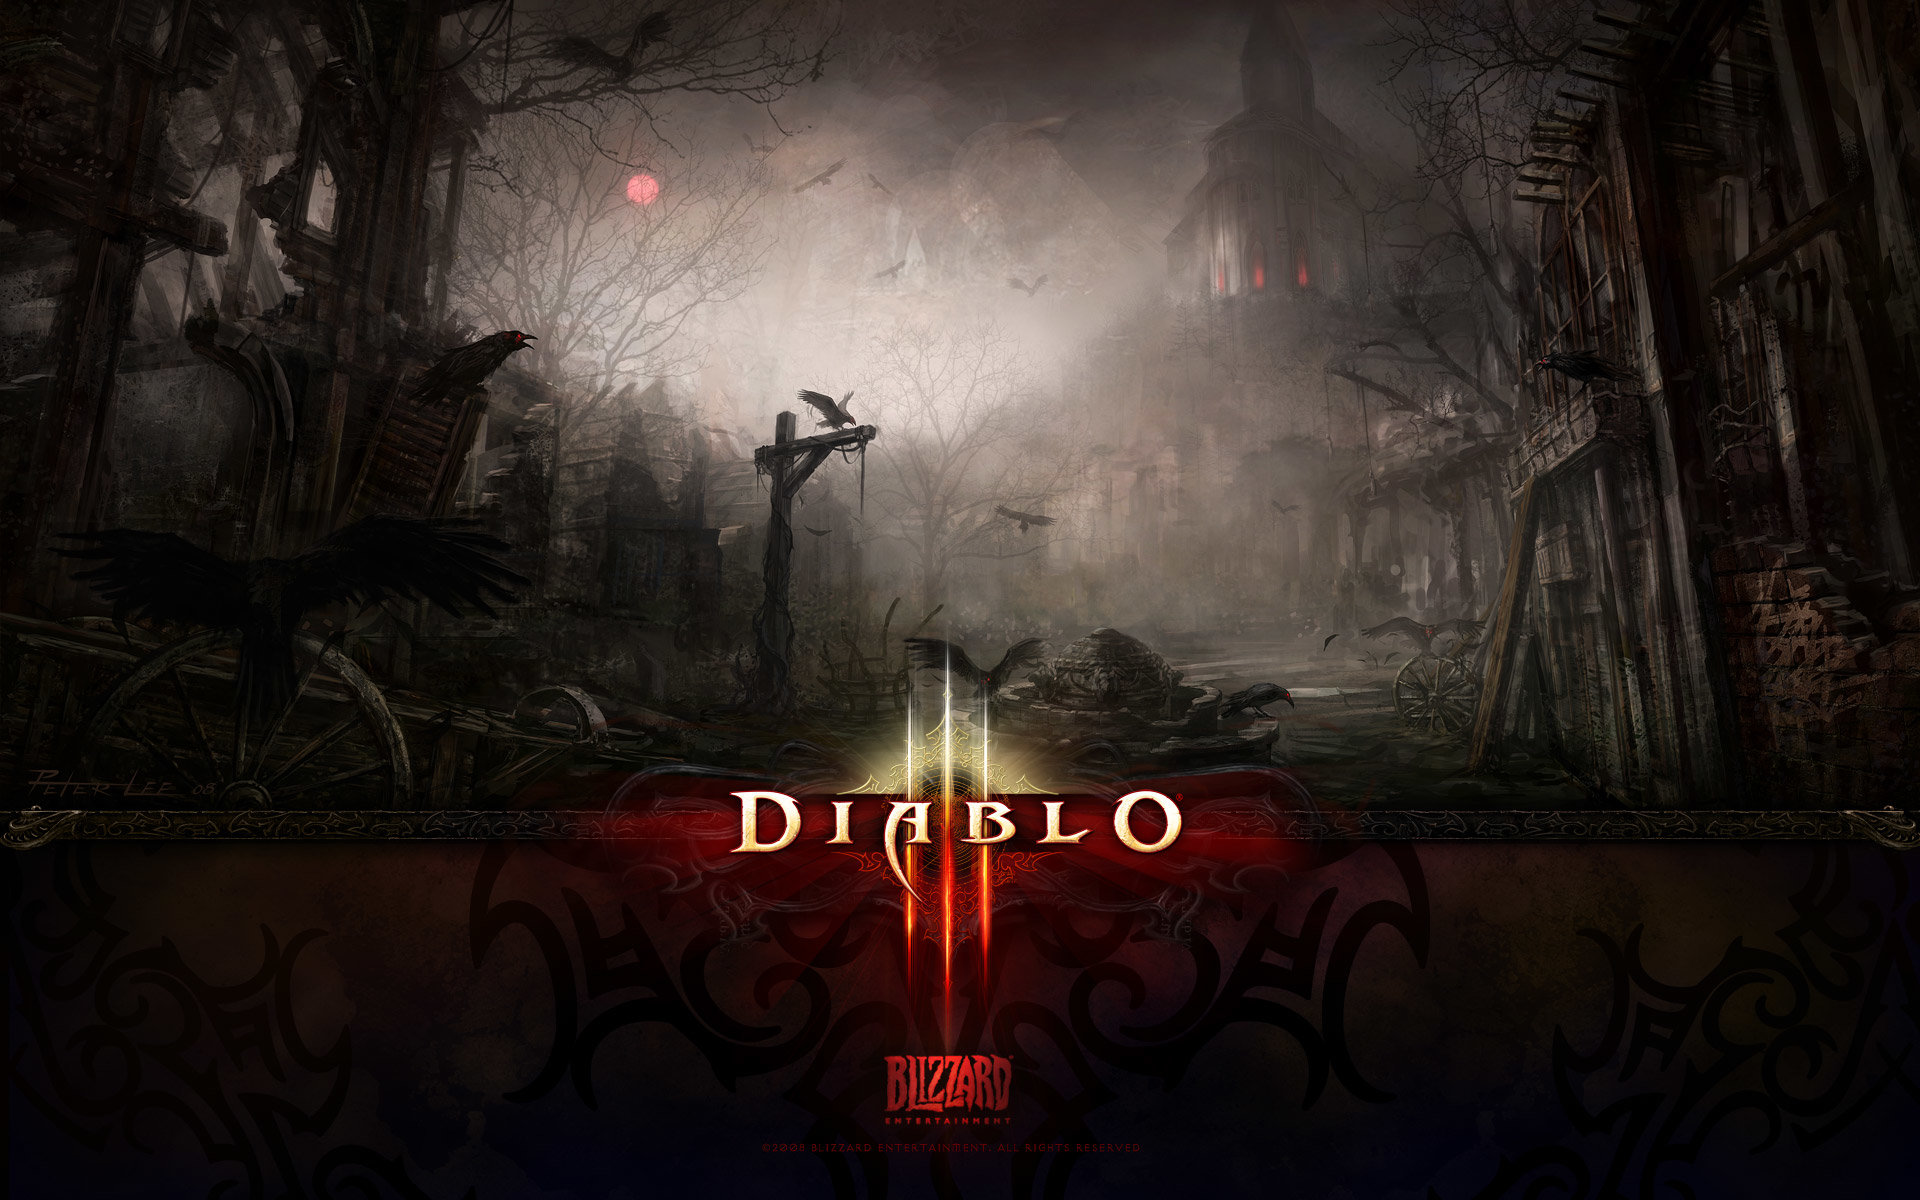 Download hd 1920x1200 Diablo 3 desktop background ID:30704 for free